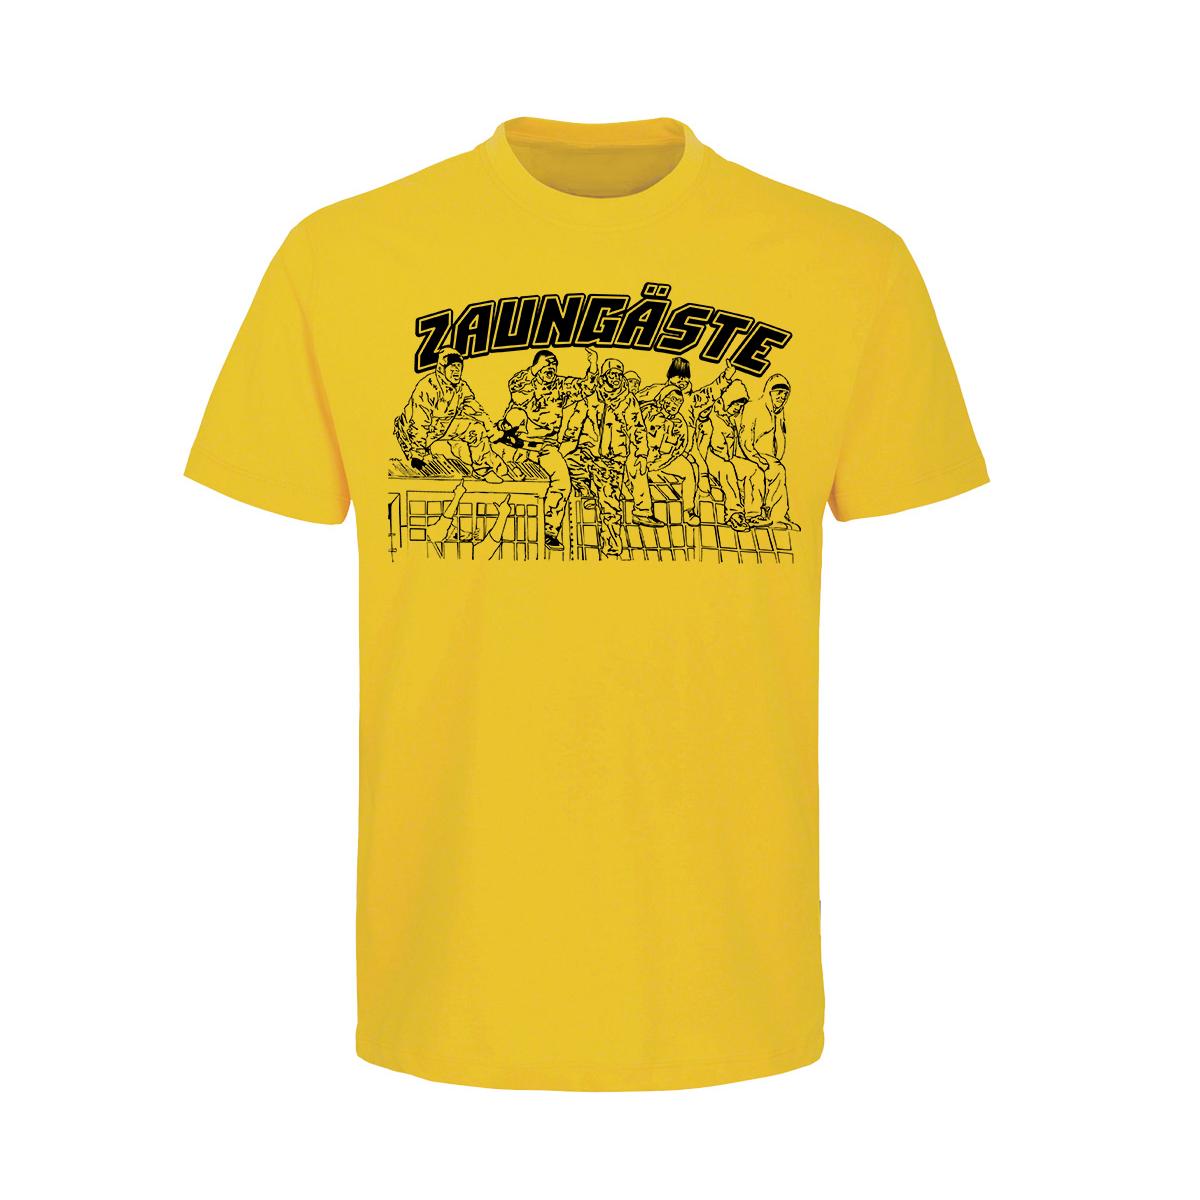 Zaungäste - Männer T-Shirt - gelb